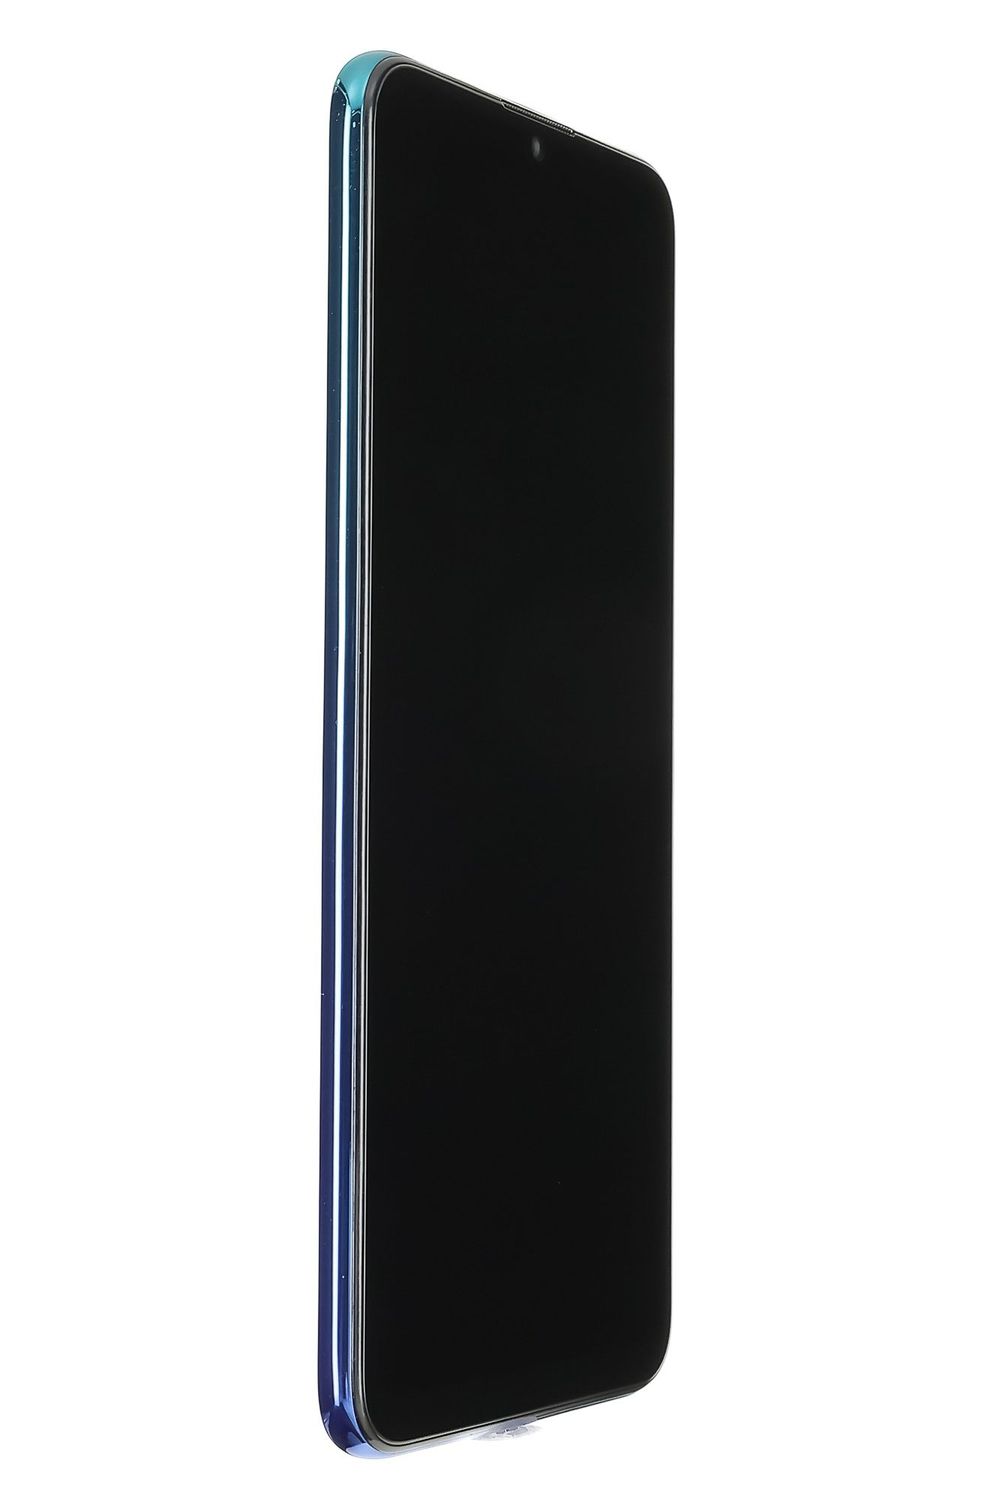 <span class="sep">telefon mobil</span> <span class="title-brand">Huawei</span><br /> P Smart (2019)<span class='d-none d-lg-inline'>,</span> <span>Aurora Blue, 64 GB,  Bun</span>